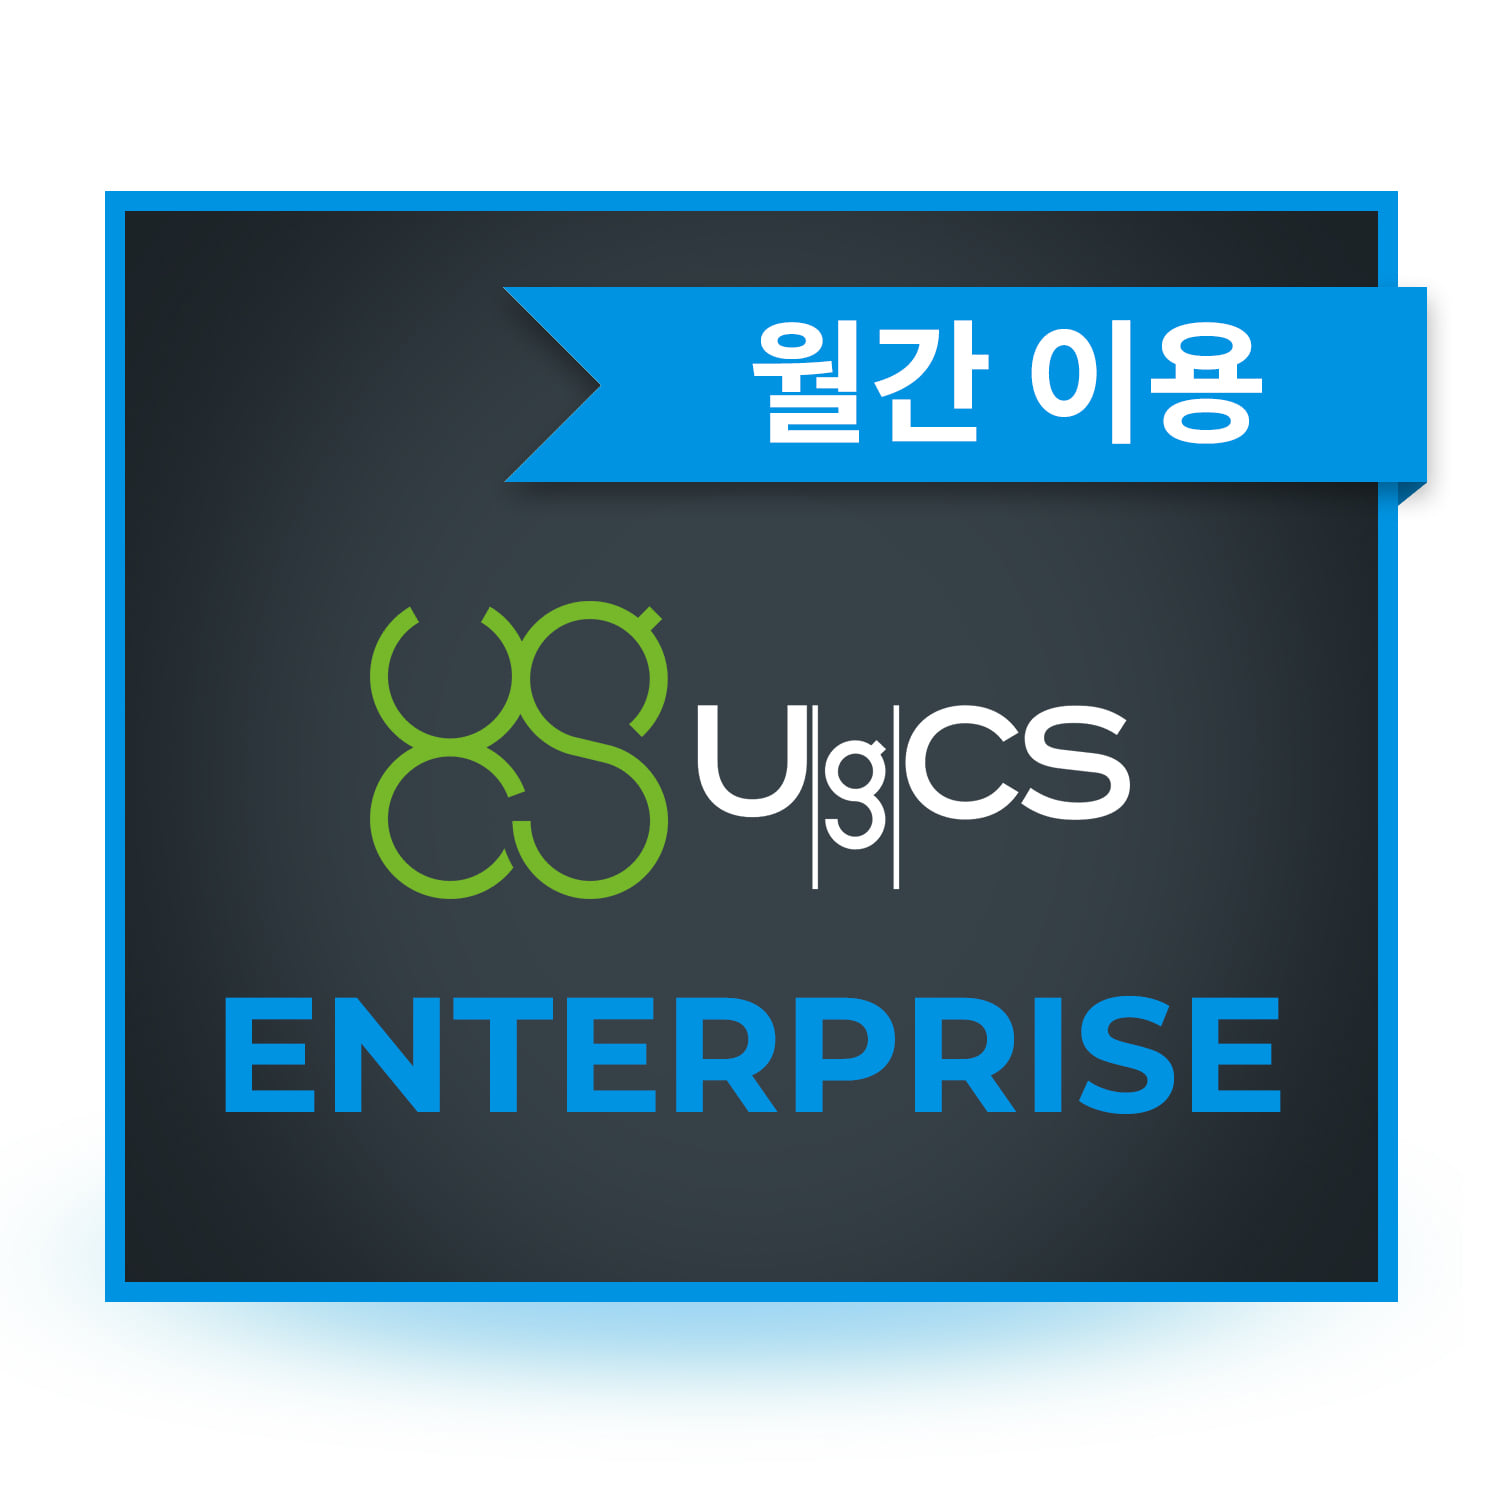 UgCS Enterprise 드론관제 측량 소프트웨어 월간 이용 헬셀